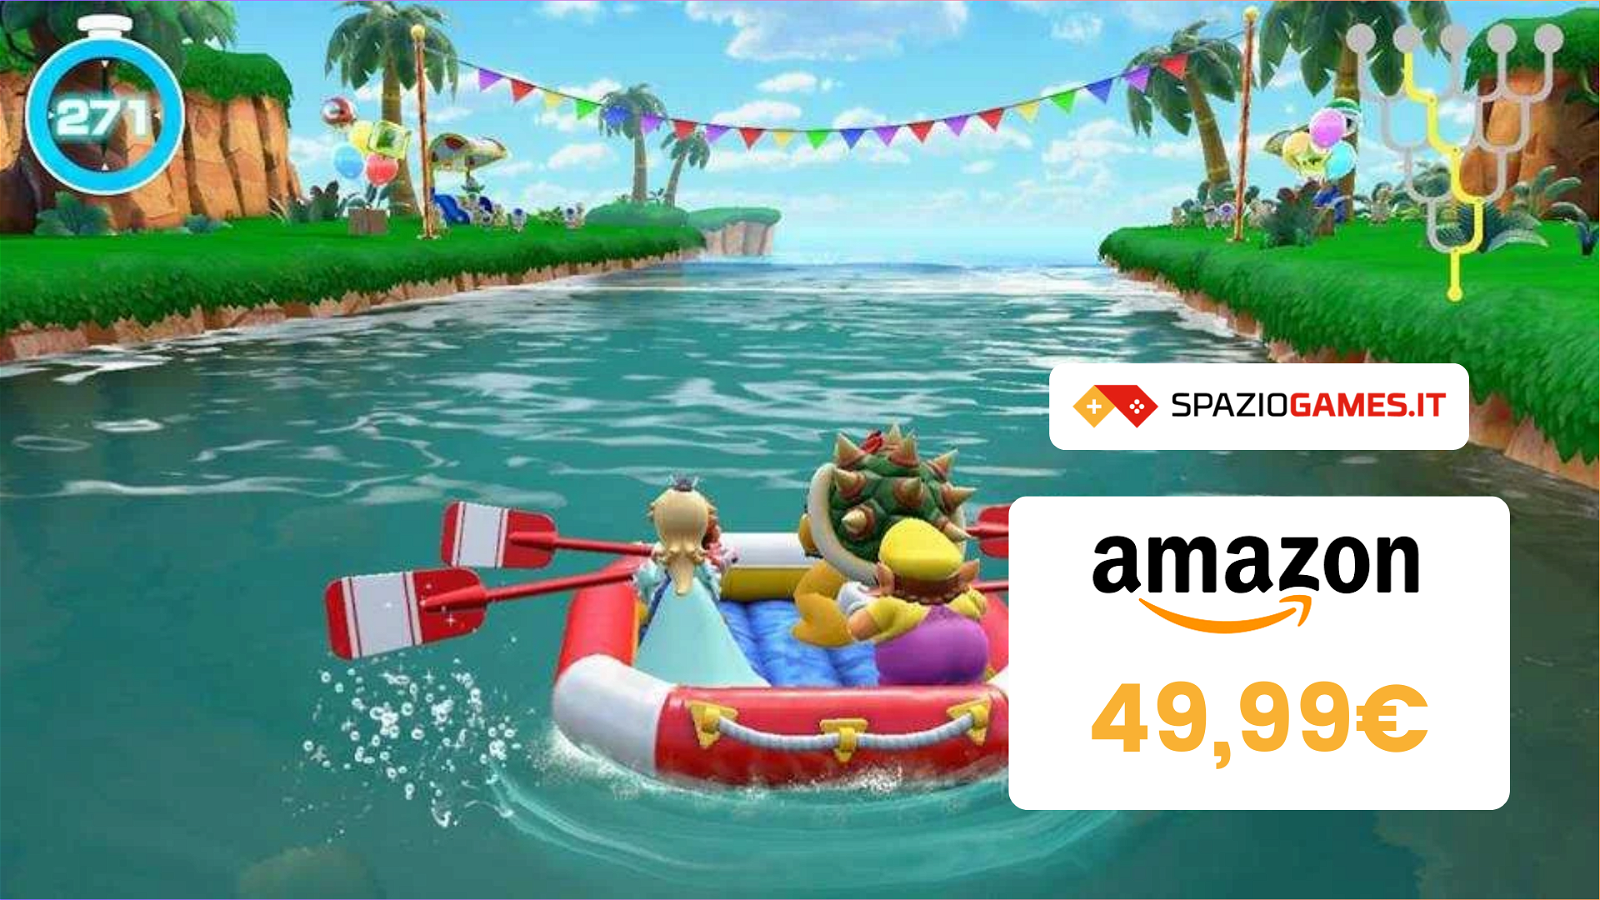 Super Mario Party: oggi puoi acquistarlo a 49,99€!